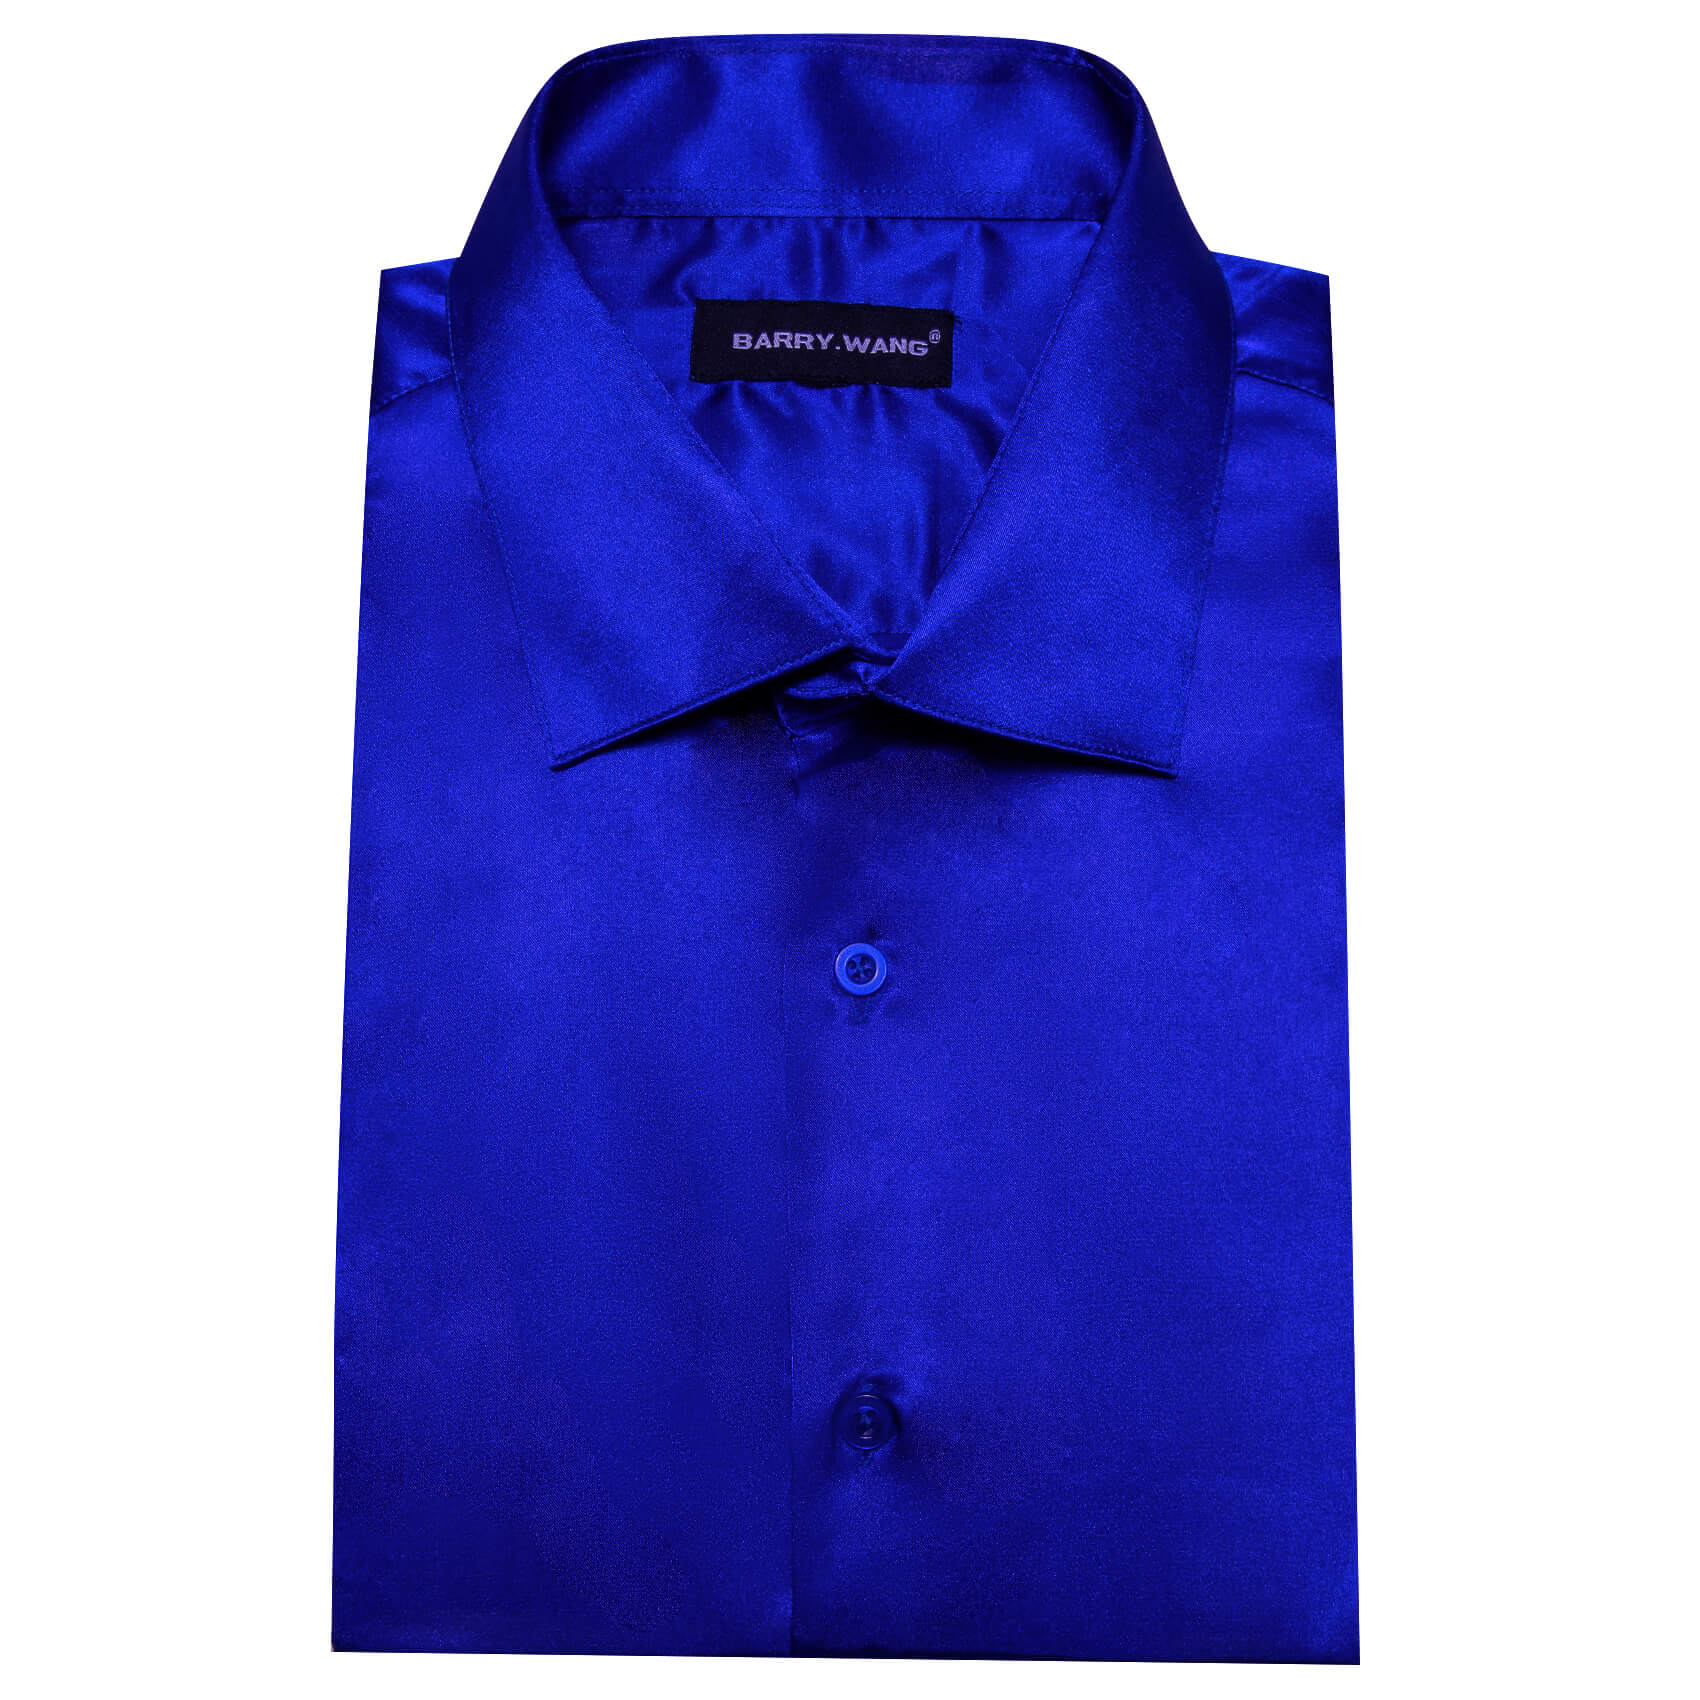 Barry Wang Short Sleeve Shirt Solid Blue Shirt